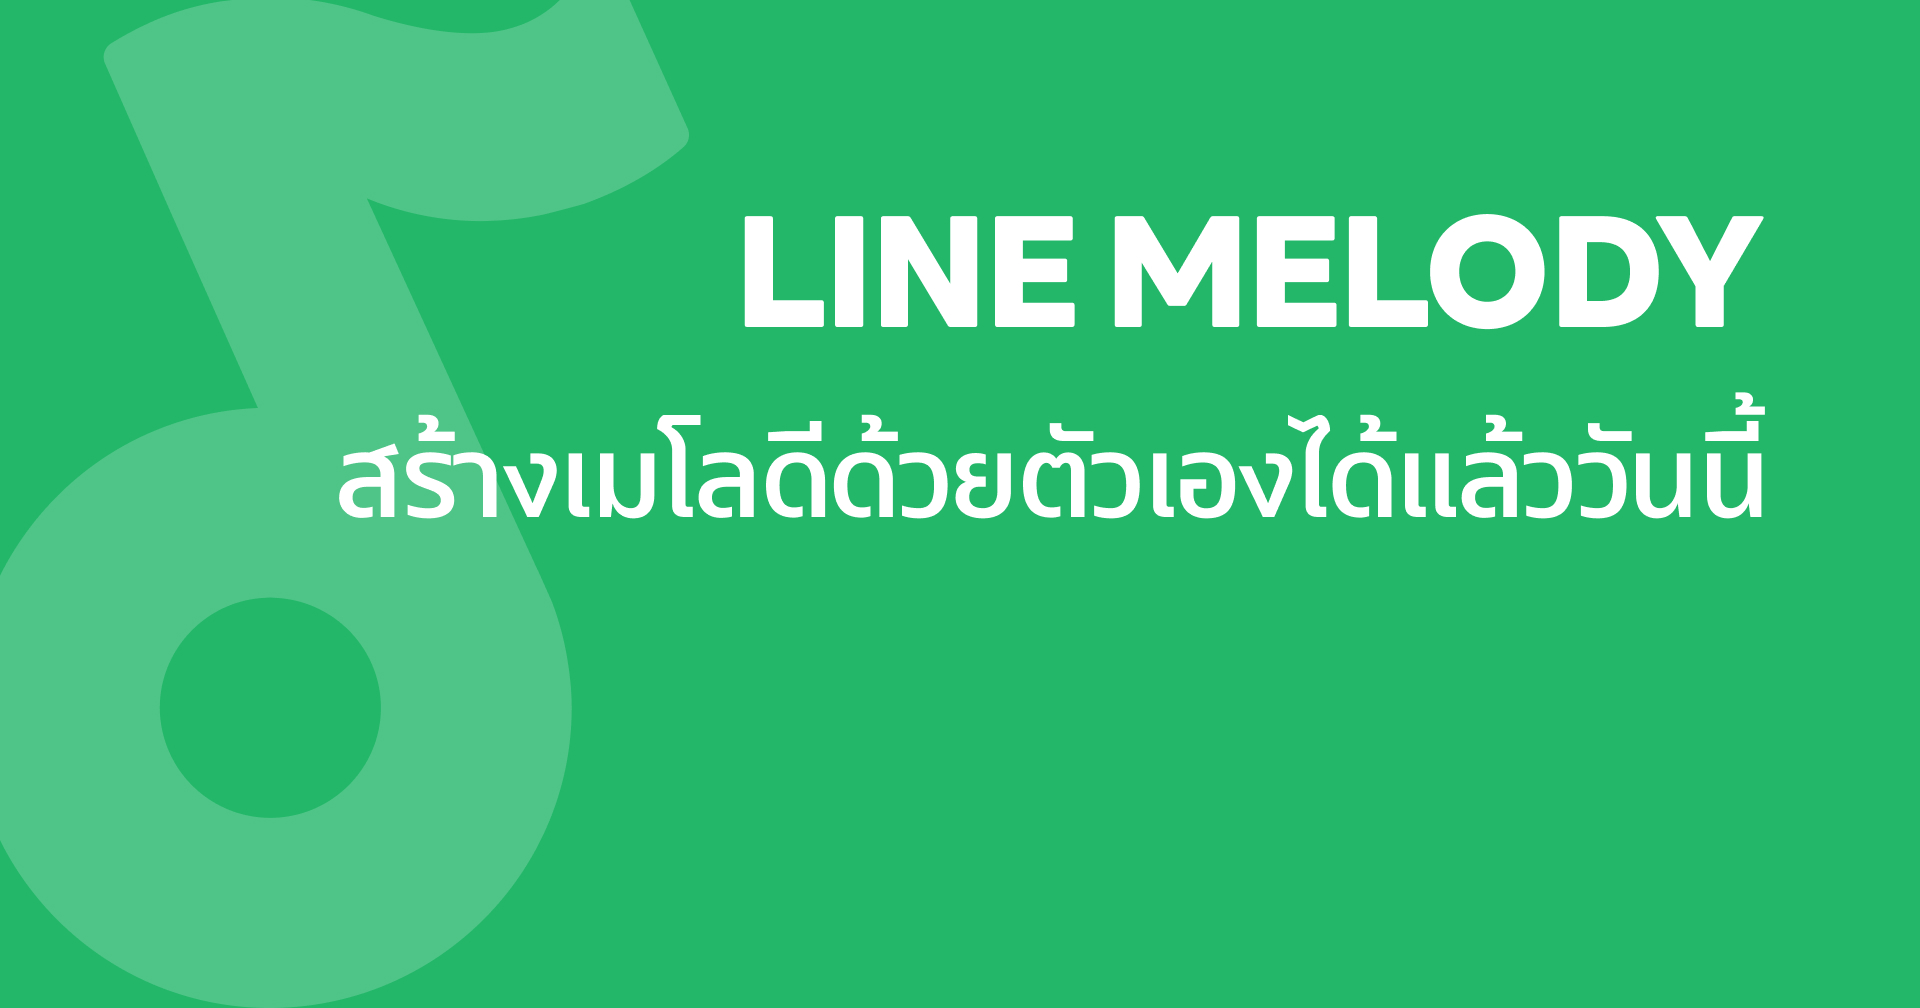 LINE เปิดบริการ Melody by me ให้ผู้ใช้สร้างเมโลดีได้ด้วยตัวเอง ตั้งเป็นเสียงรอสาย หรือเสียงเรียกเข้าก็ได้